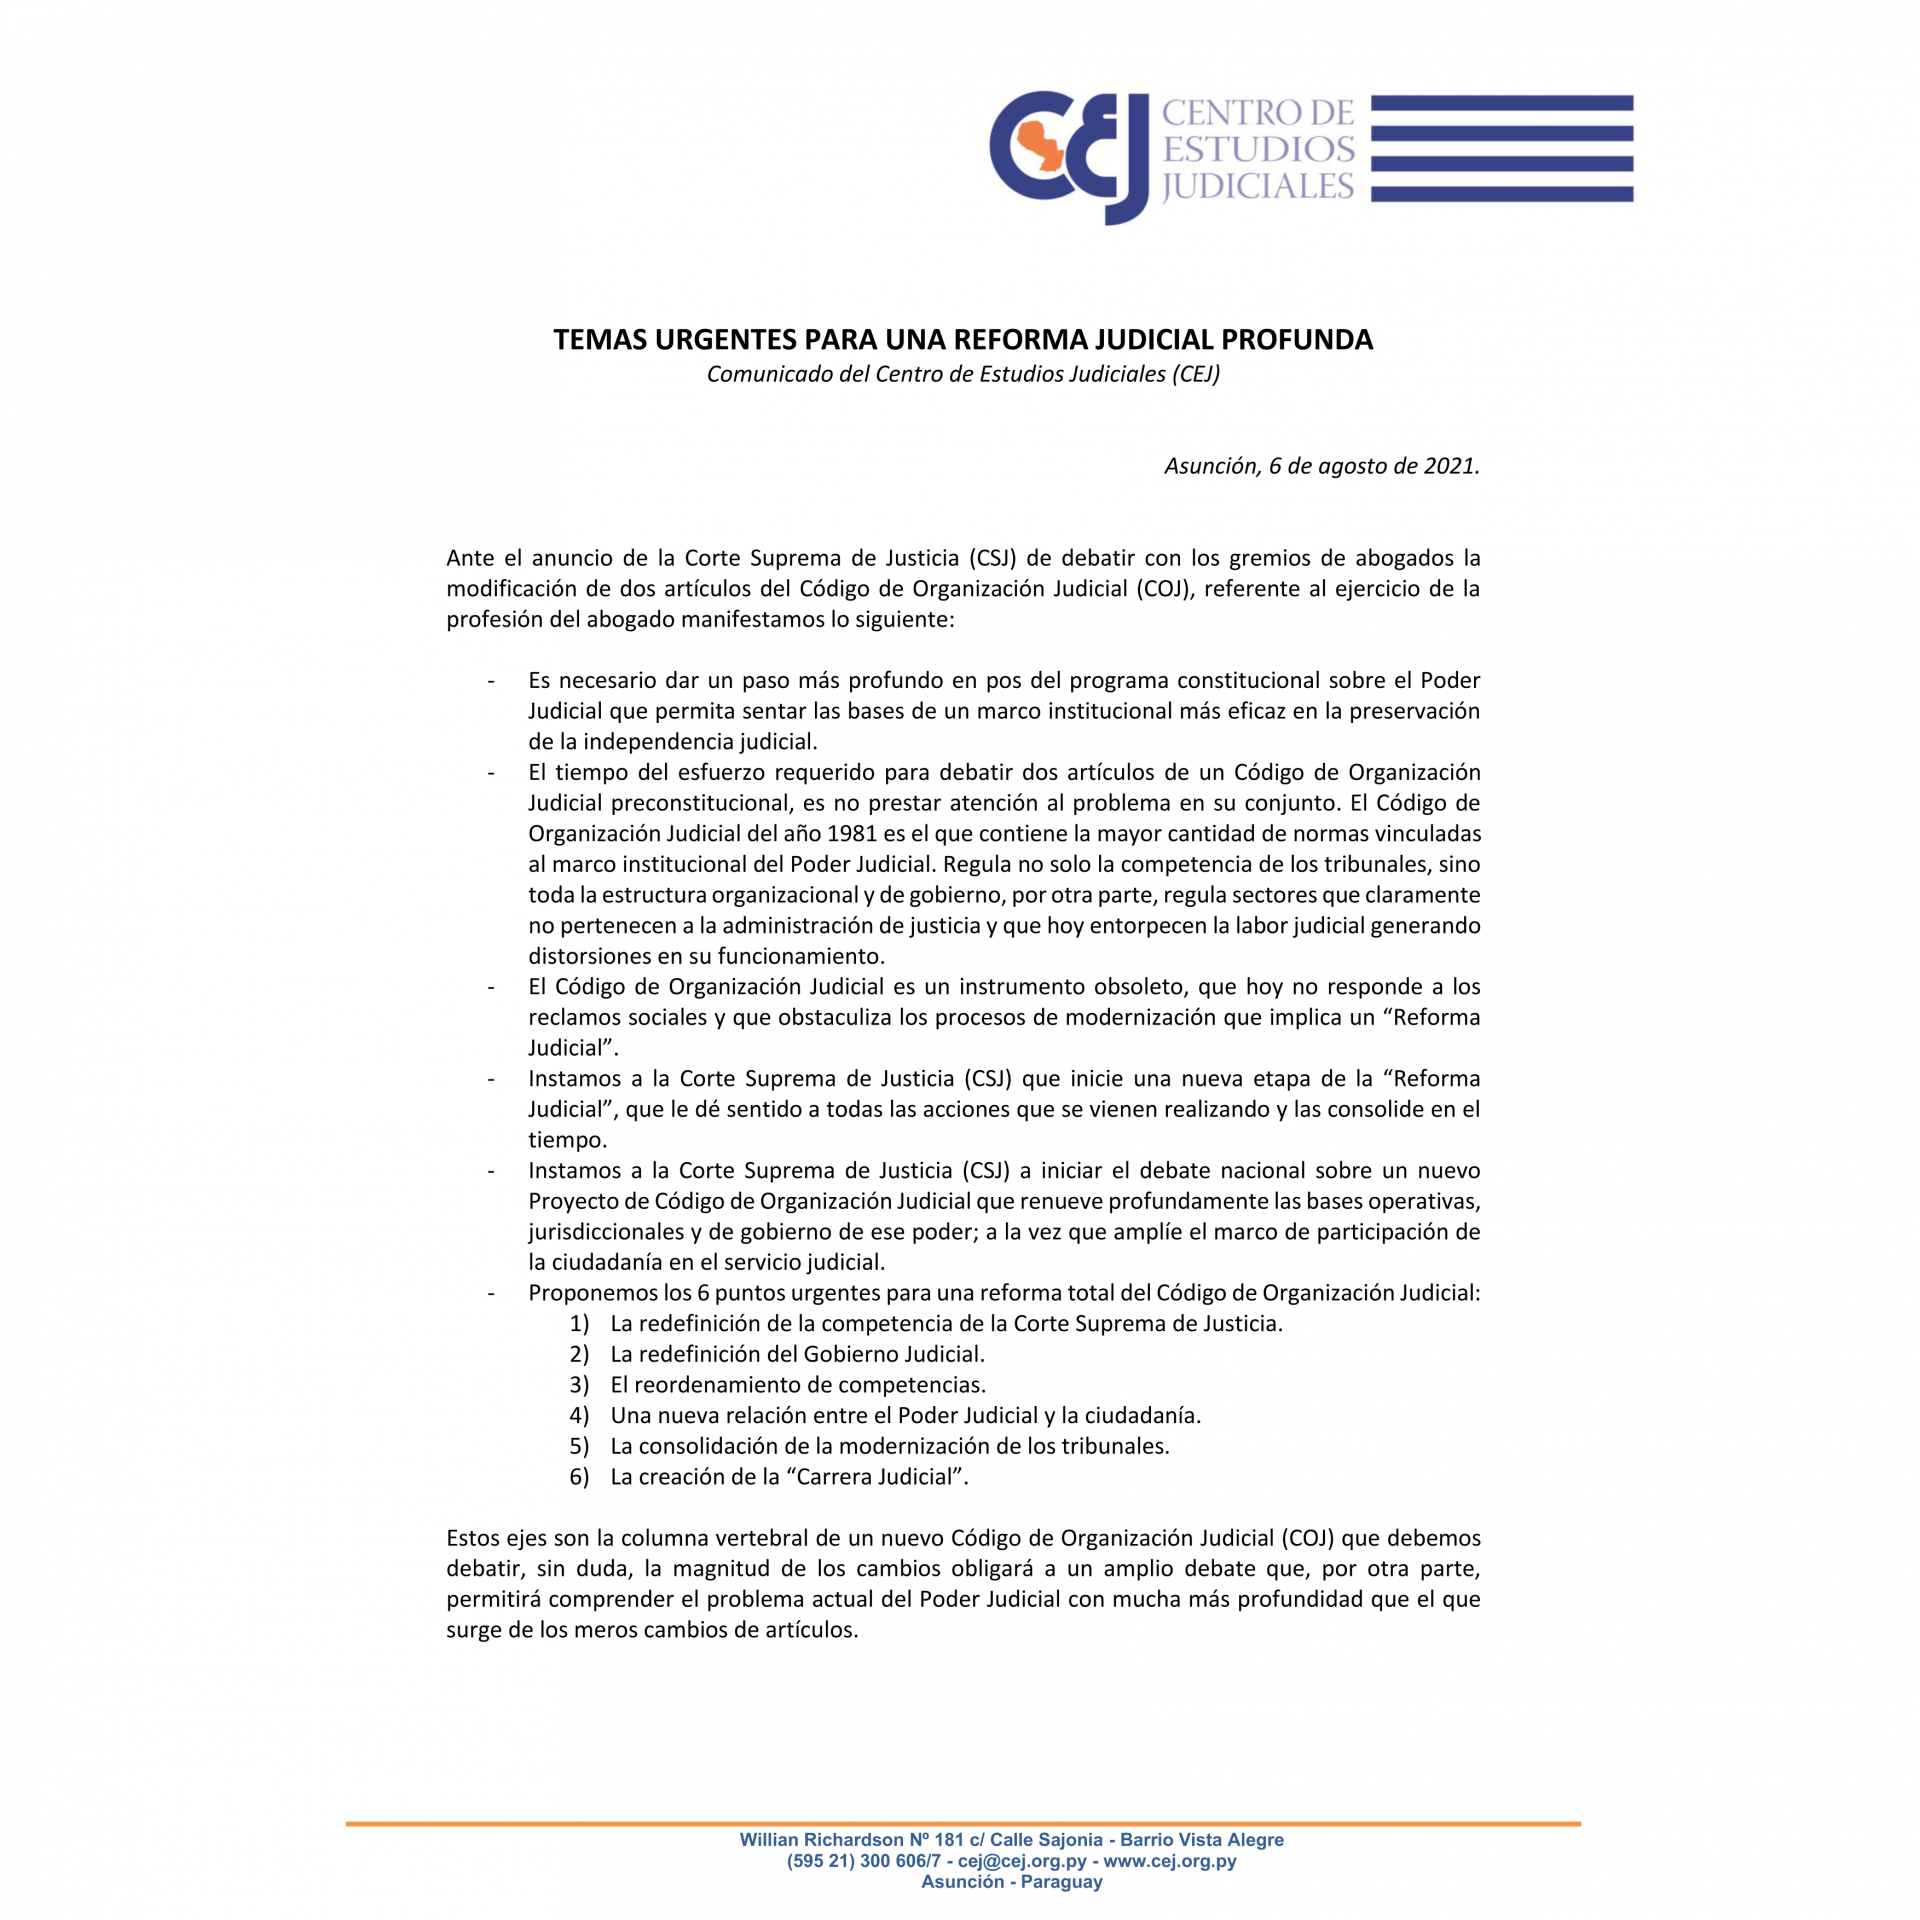 El CEJ propone una reforma total de Código de Organización Judicial